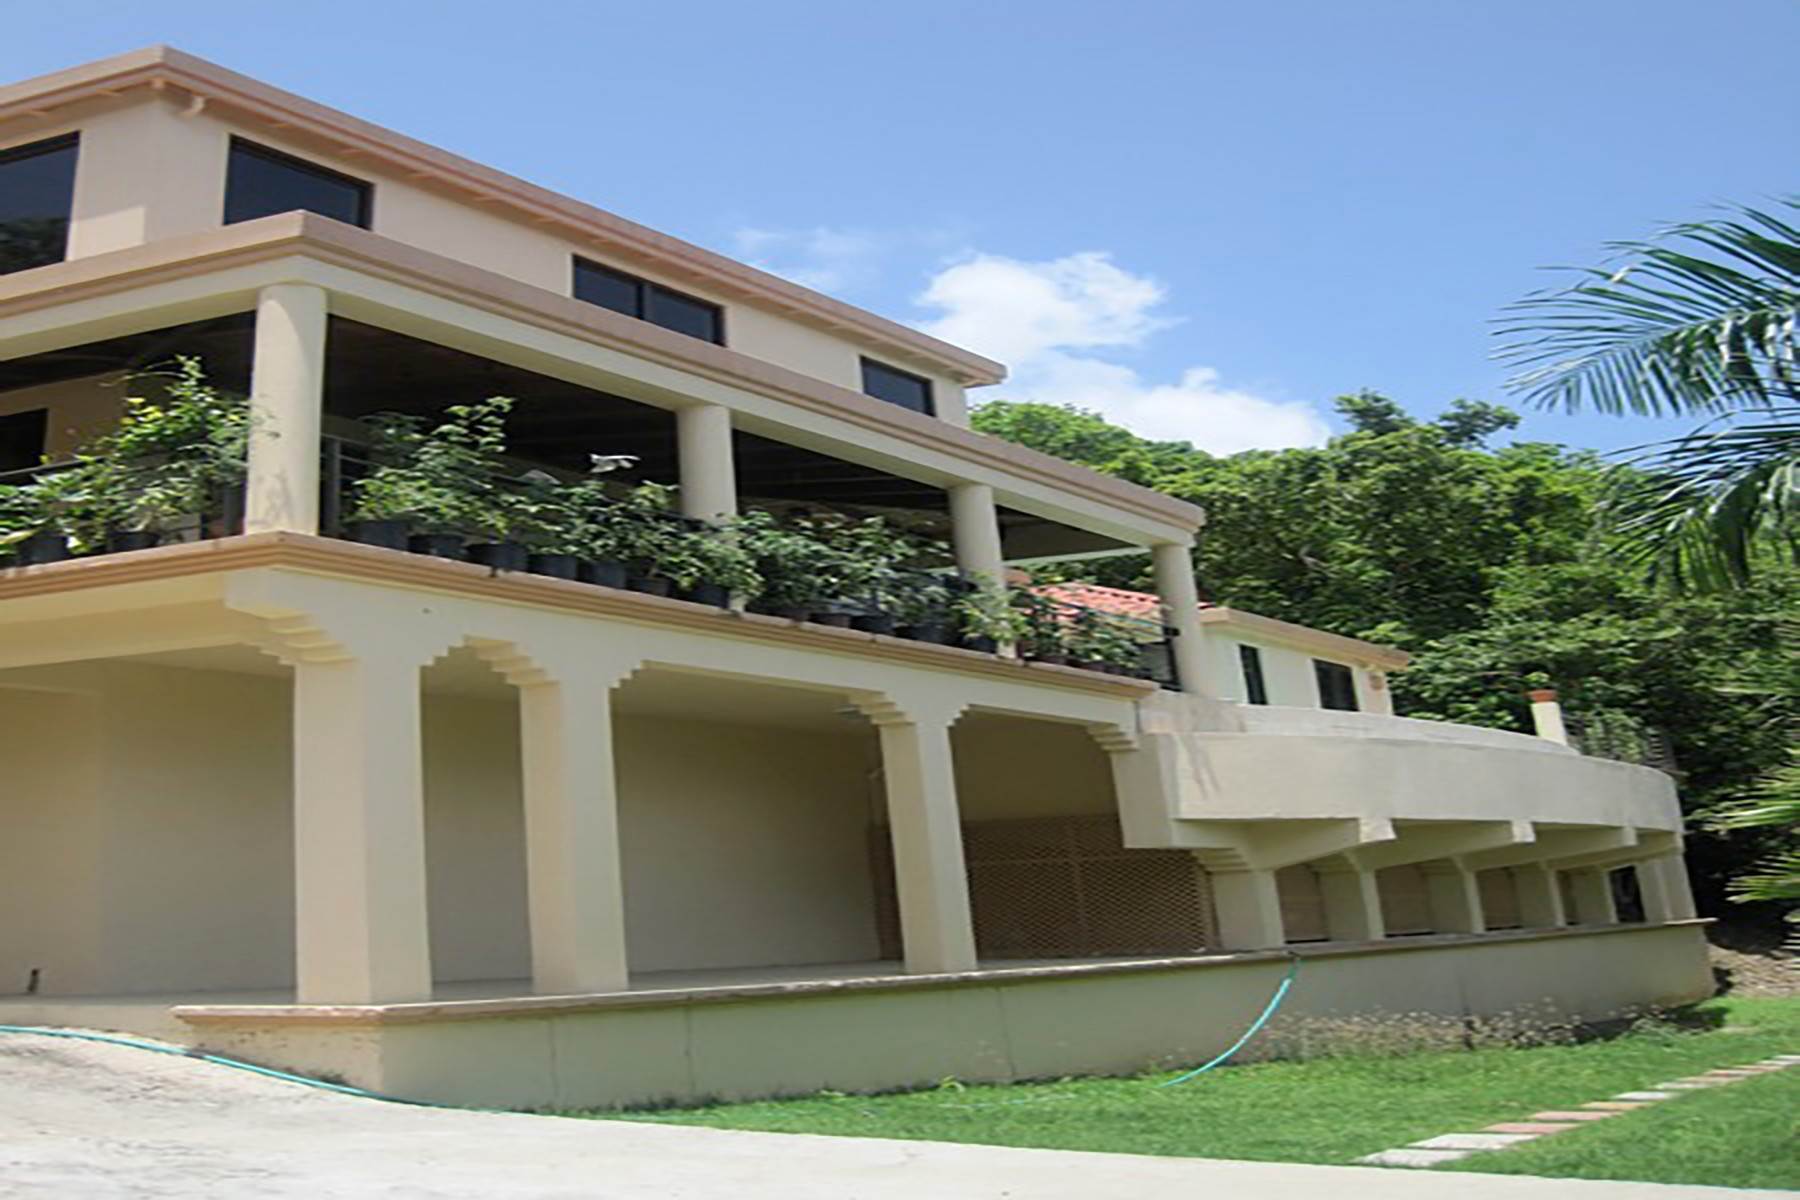 2. Single Family Homes för Försäljning vid Belmont, Tortola Brittiska Jungfruöarna